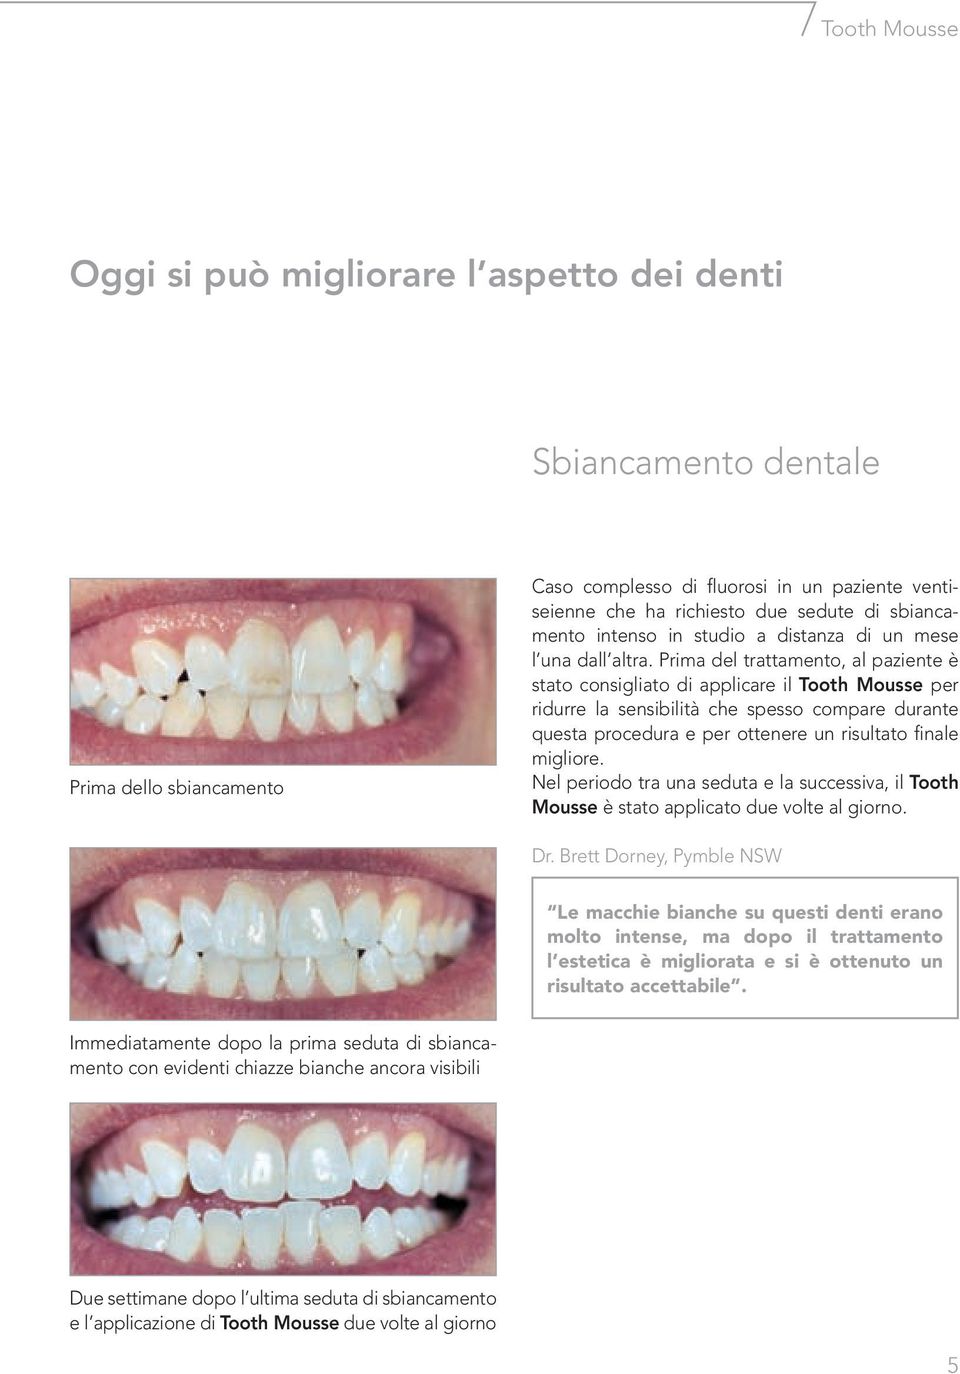 Prima del trattamento, al paziente è stato consigliato di applicare il Tooth Mousse per ridurre la sensibilità che spesso compare durante questa procedura e per ottenere un risultato finale migliore.